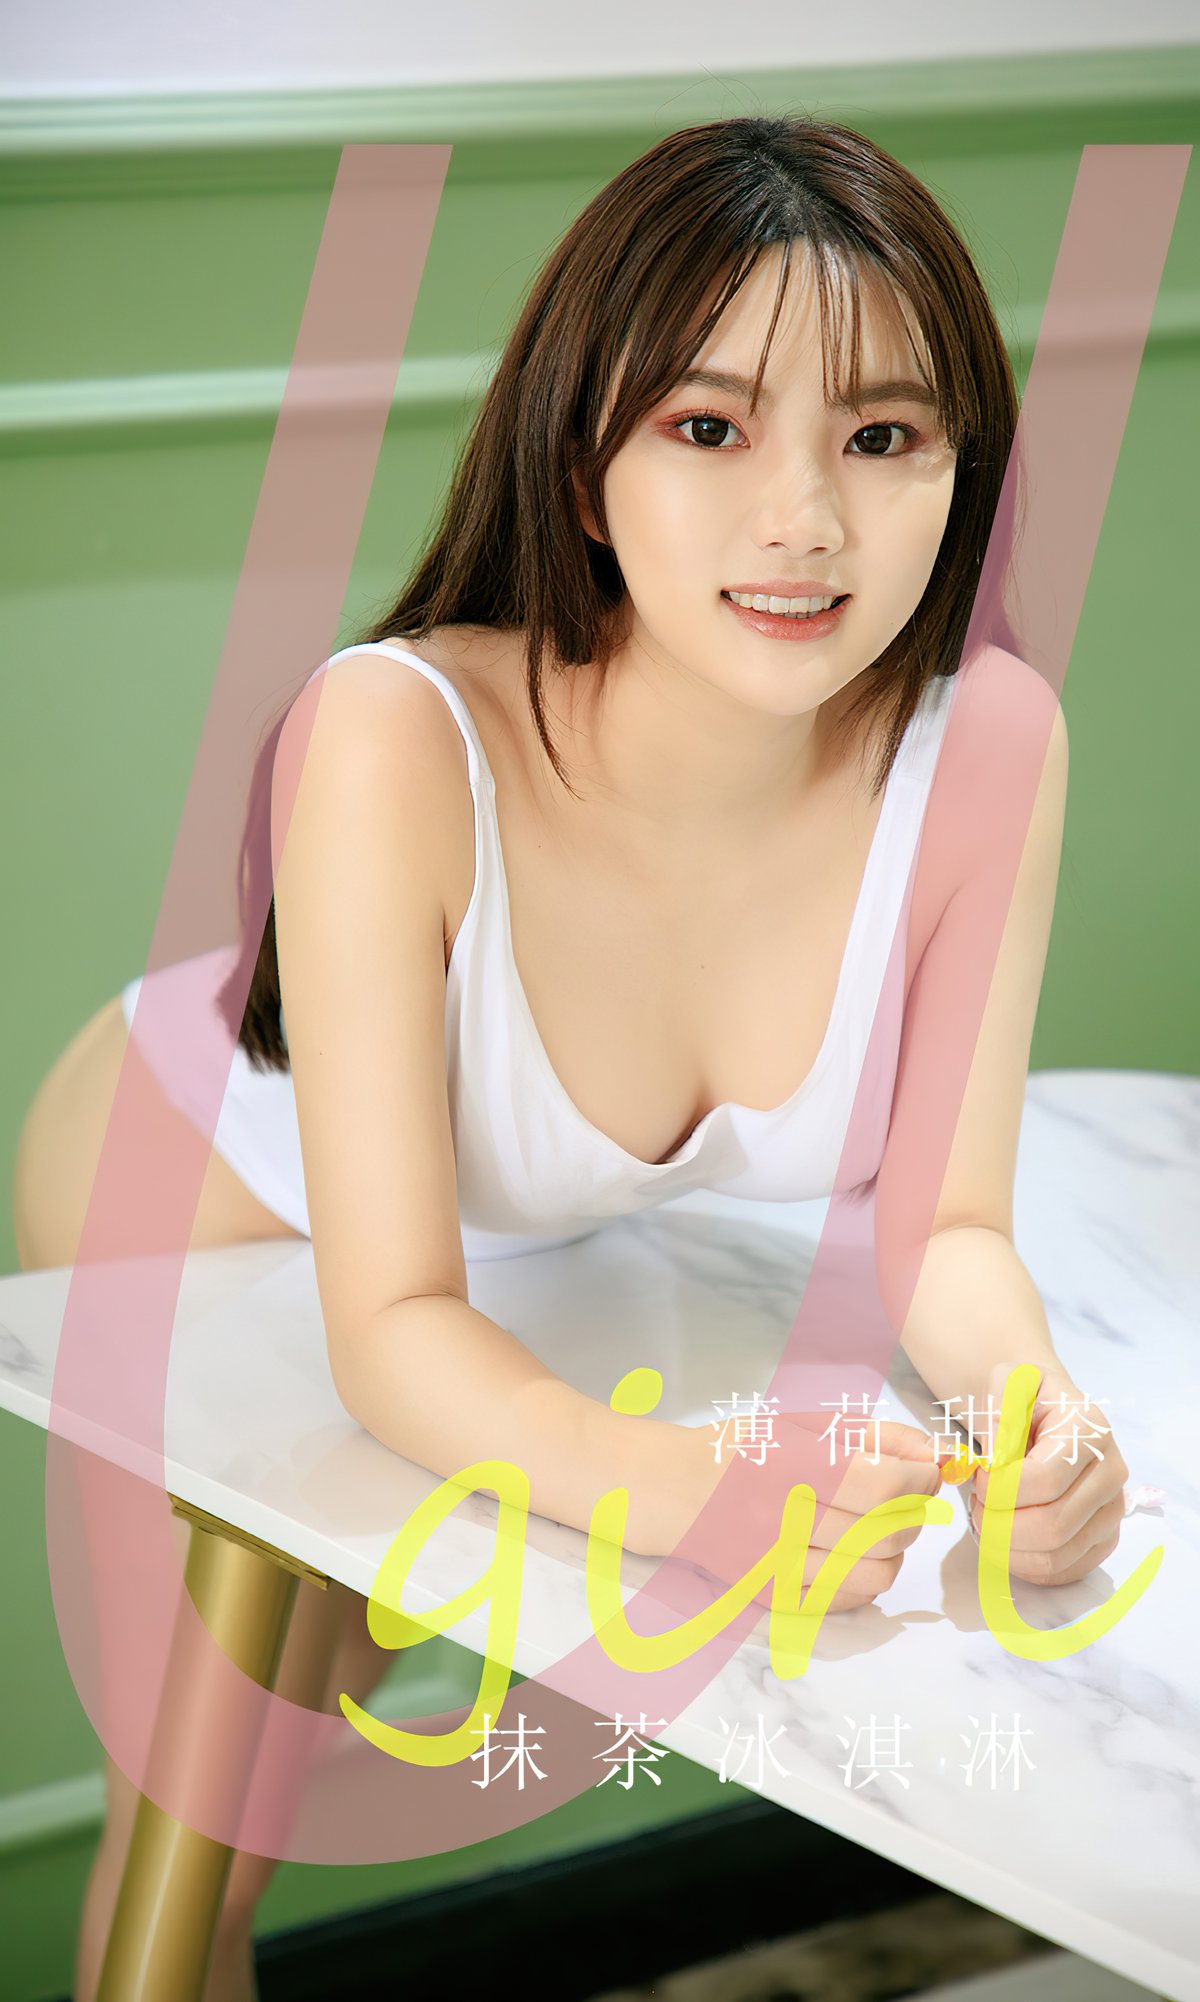 Ugirls App尤果圈 No 2594 Bo He Tian Cha 0001 6556174383.jpg